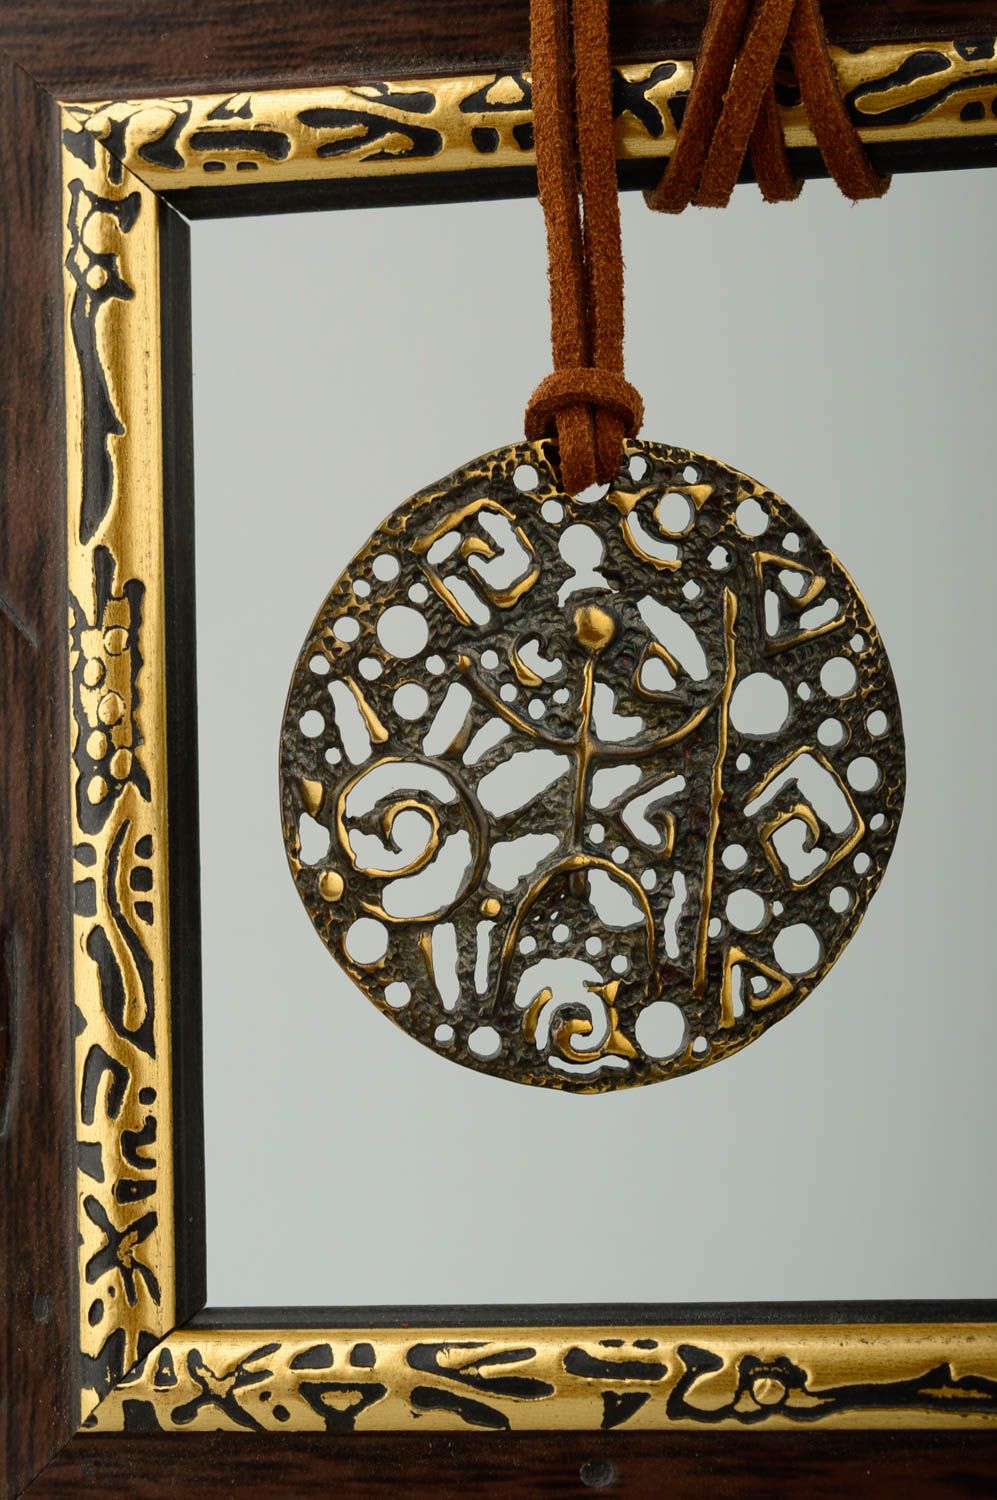 Handmsde copper pendant copper jewelry metal pendant fashion accessories photo 1